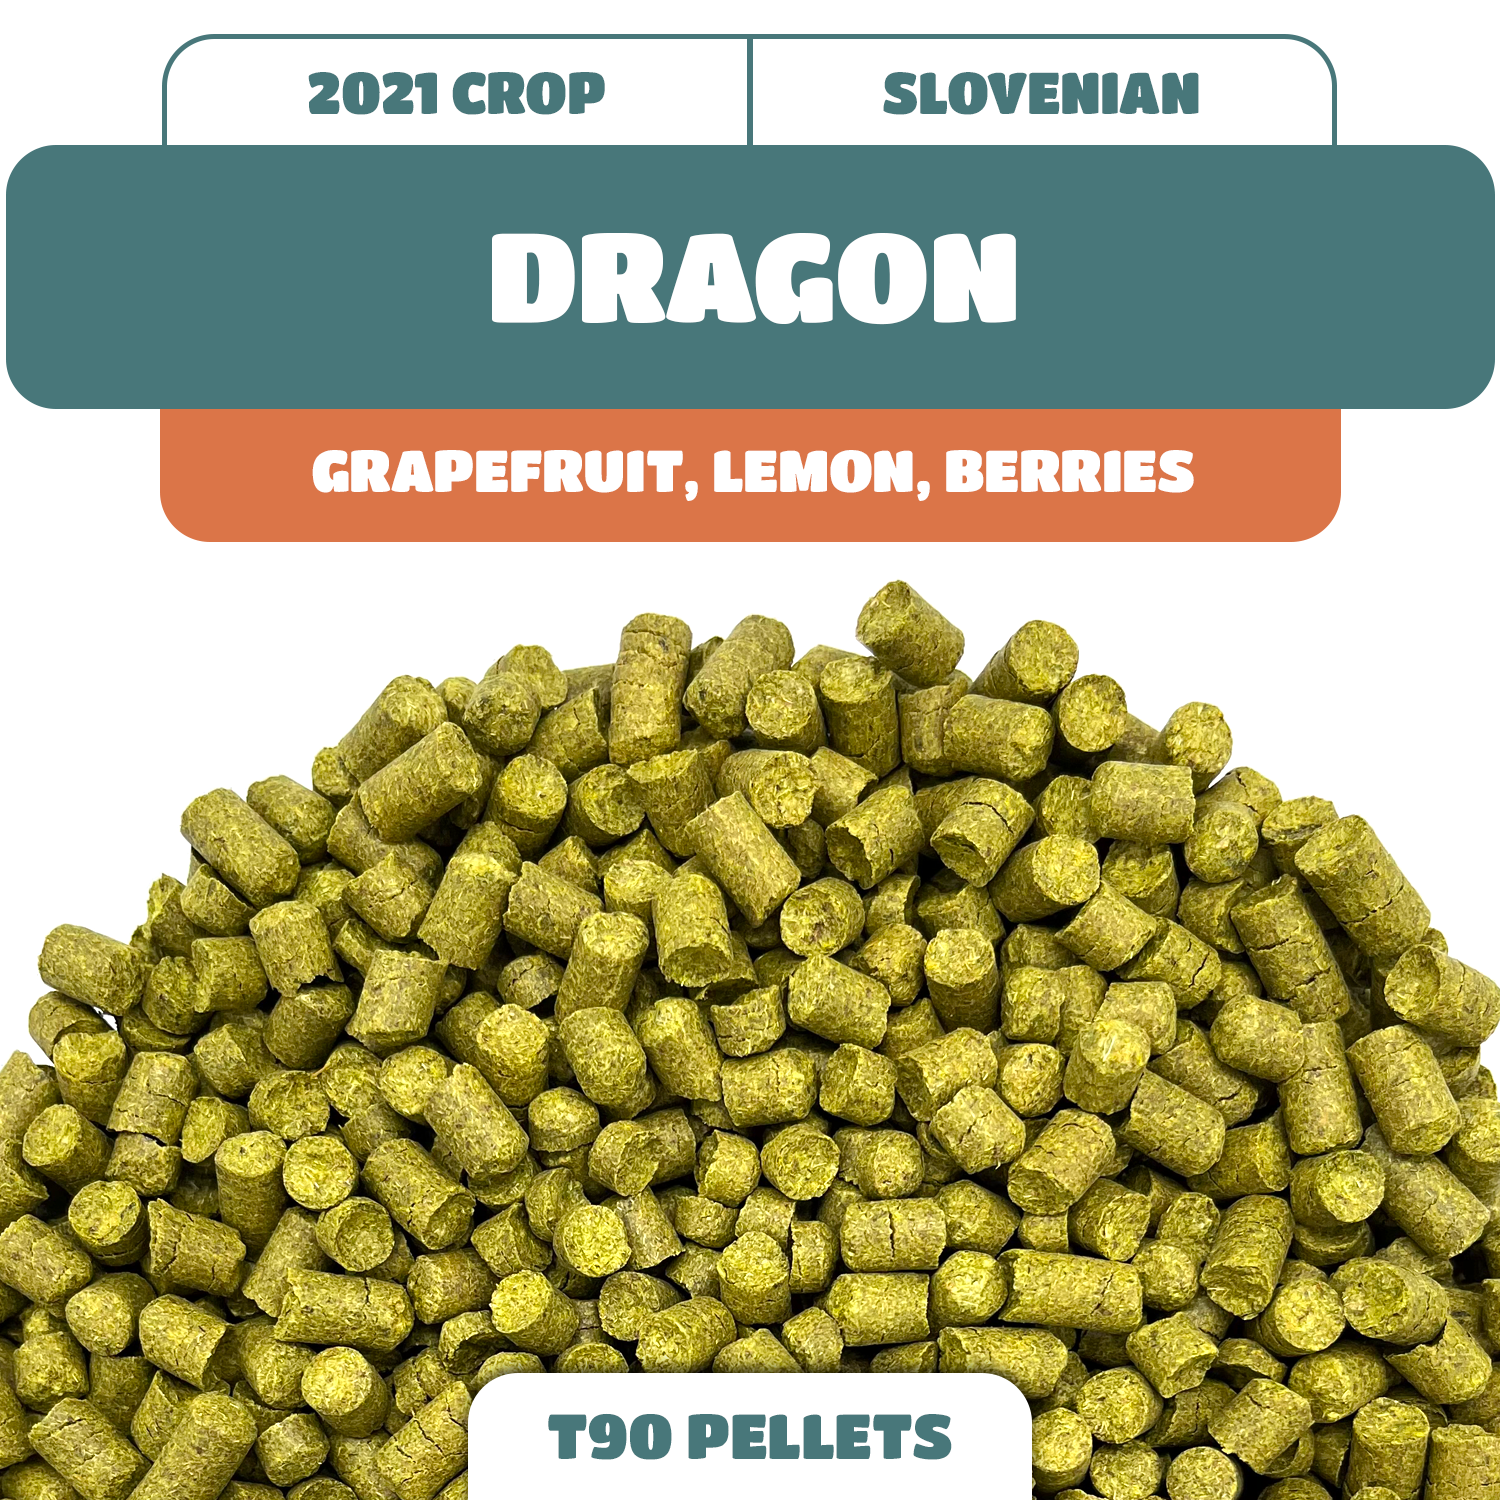 Dragon Hops - Wholesale bulk hops Styrian hops online